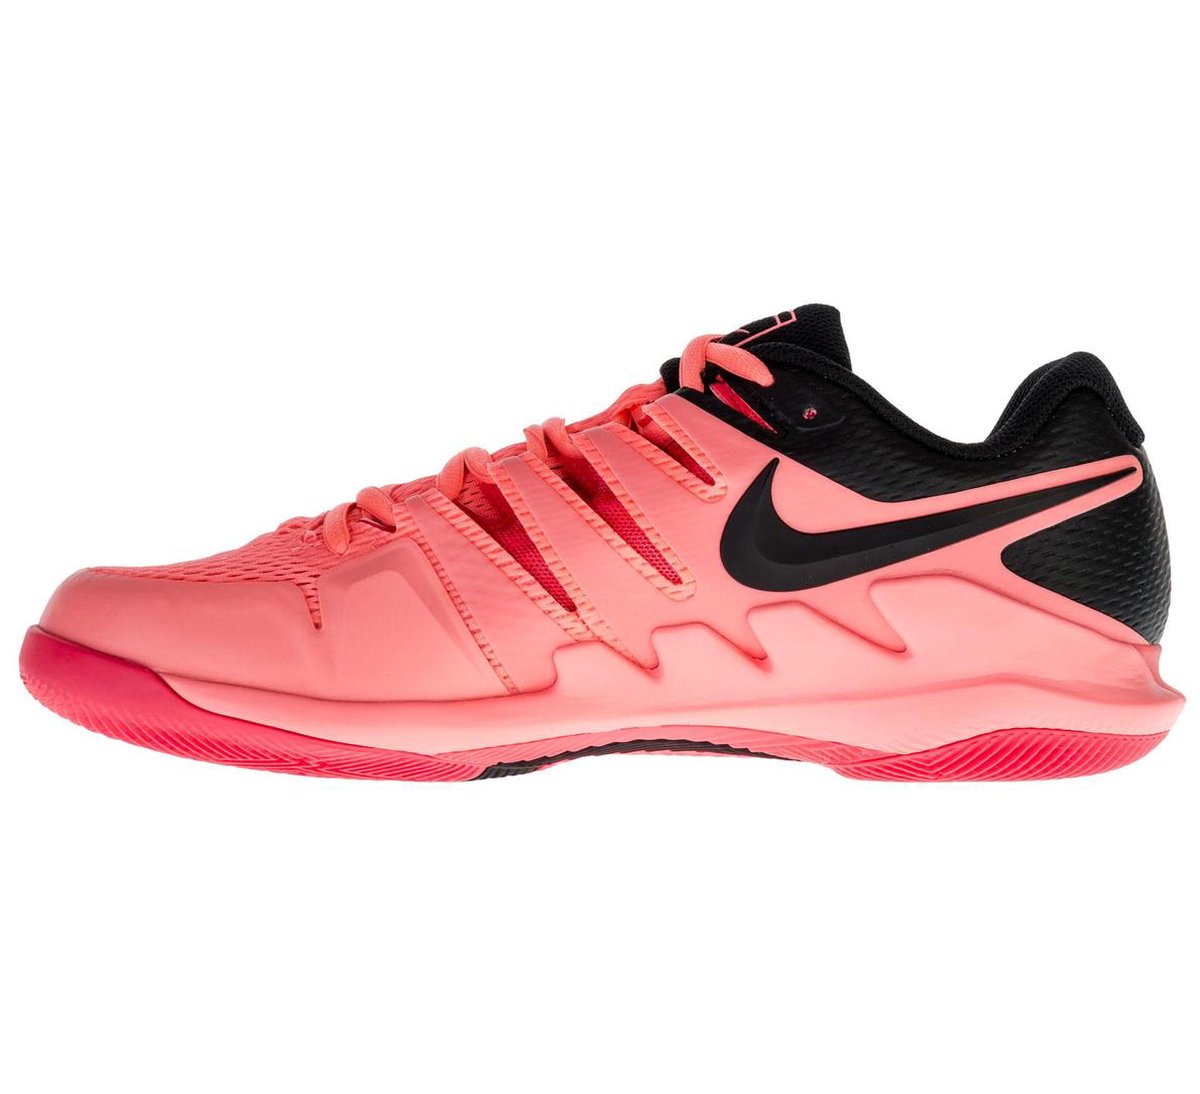 Nike Air Zoom Vapor X Sportschoenen - Maat 44 - Mannen - roze/zwart |  bol.com